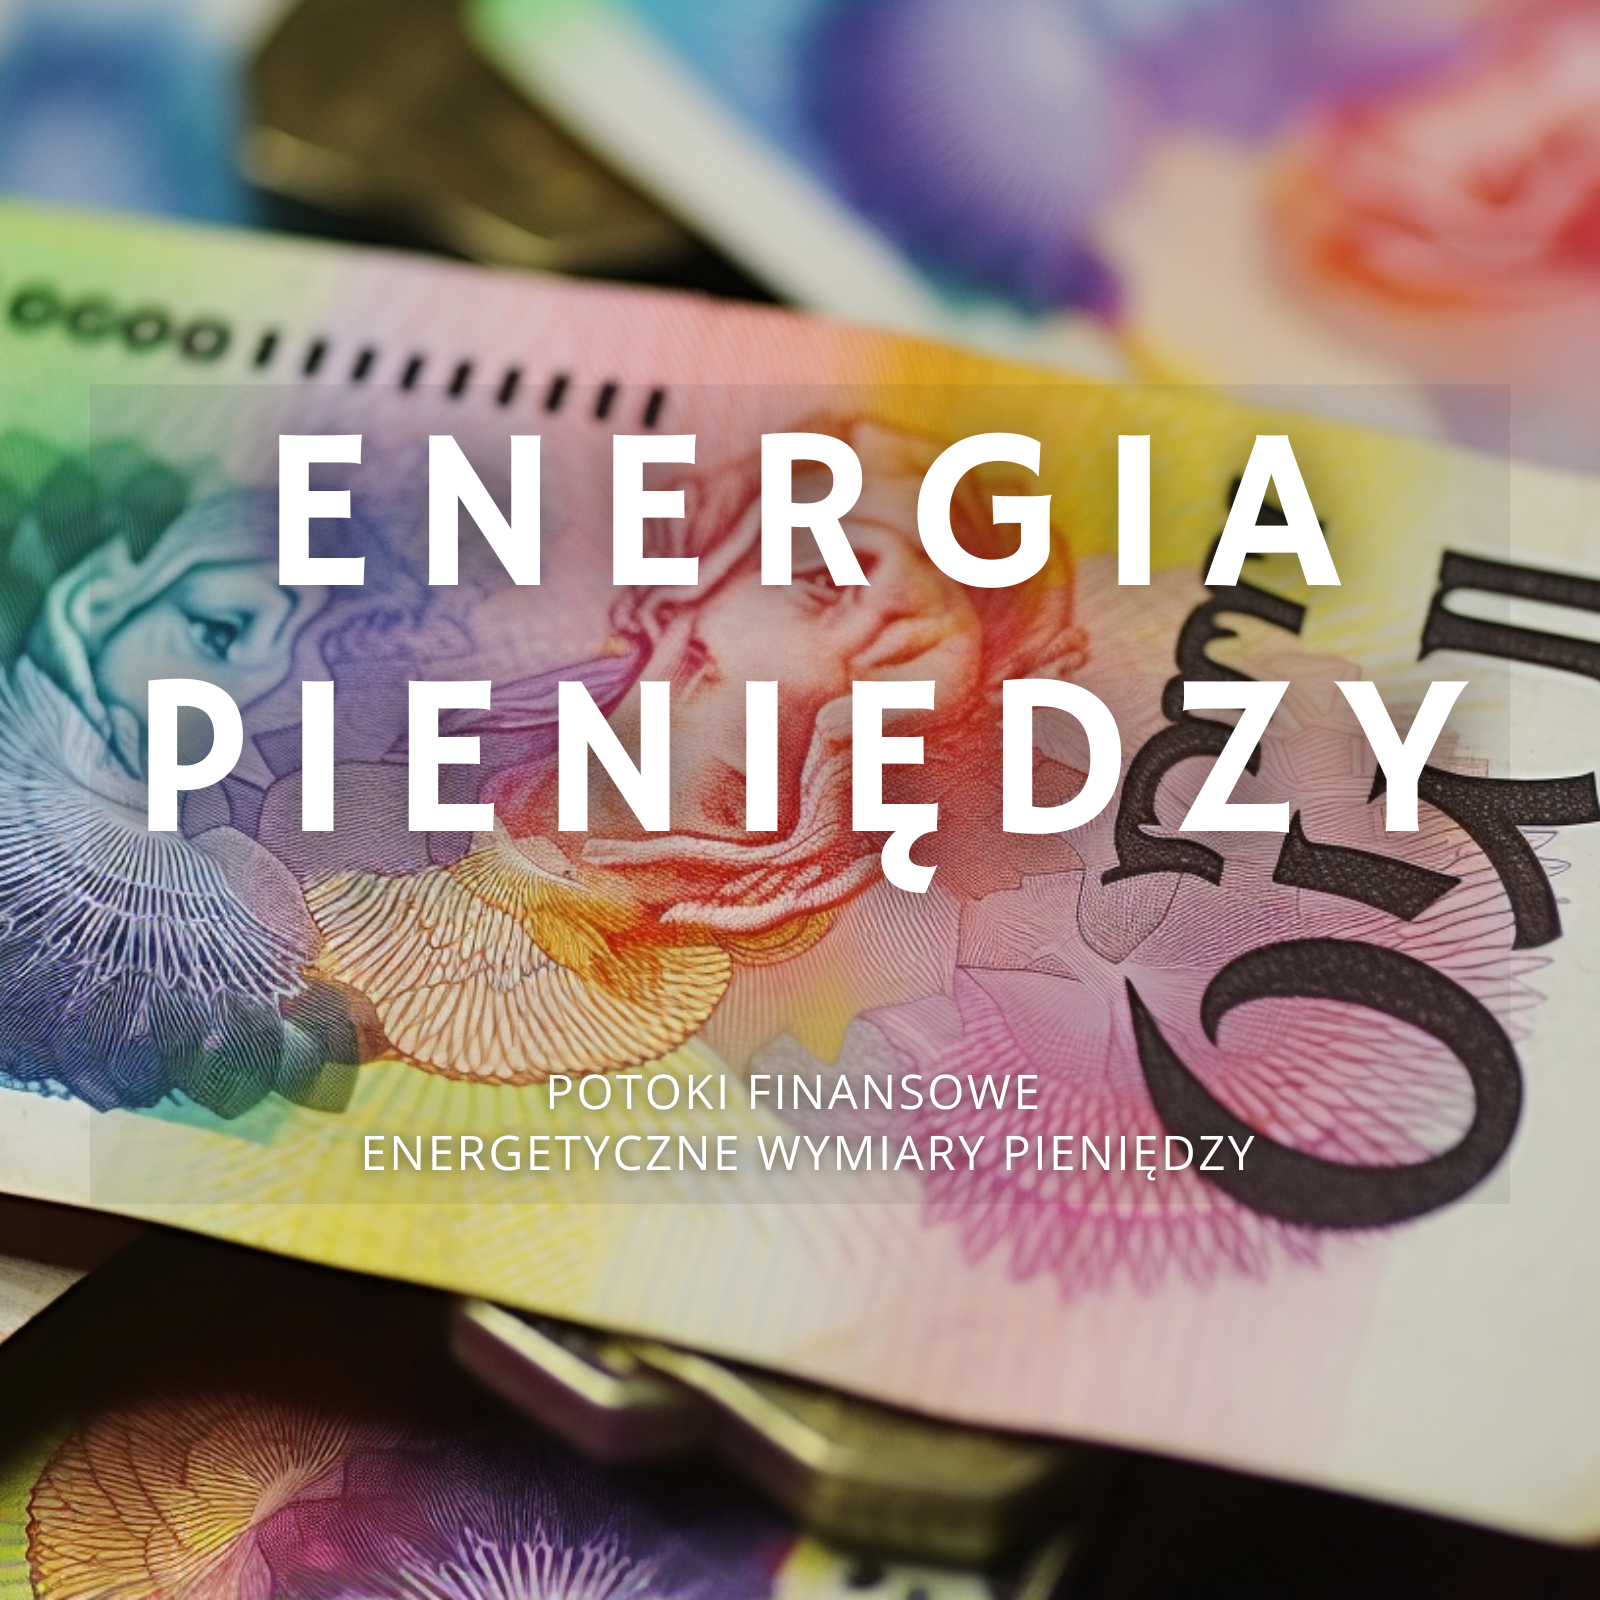 Energetyczne wymiary pieniędzy